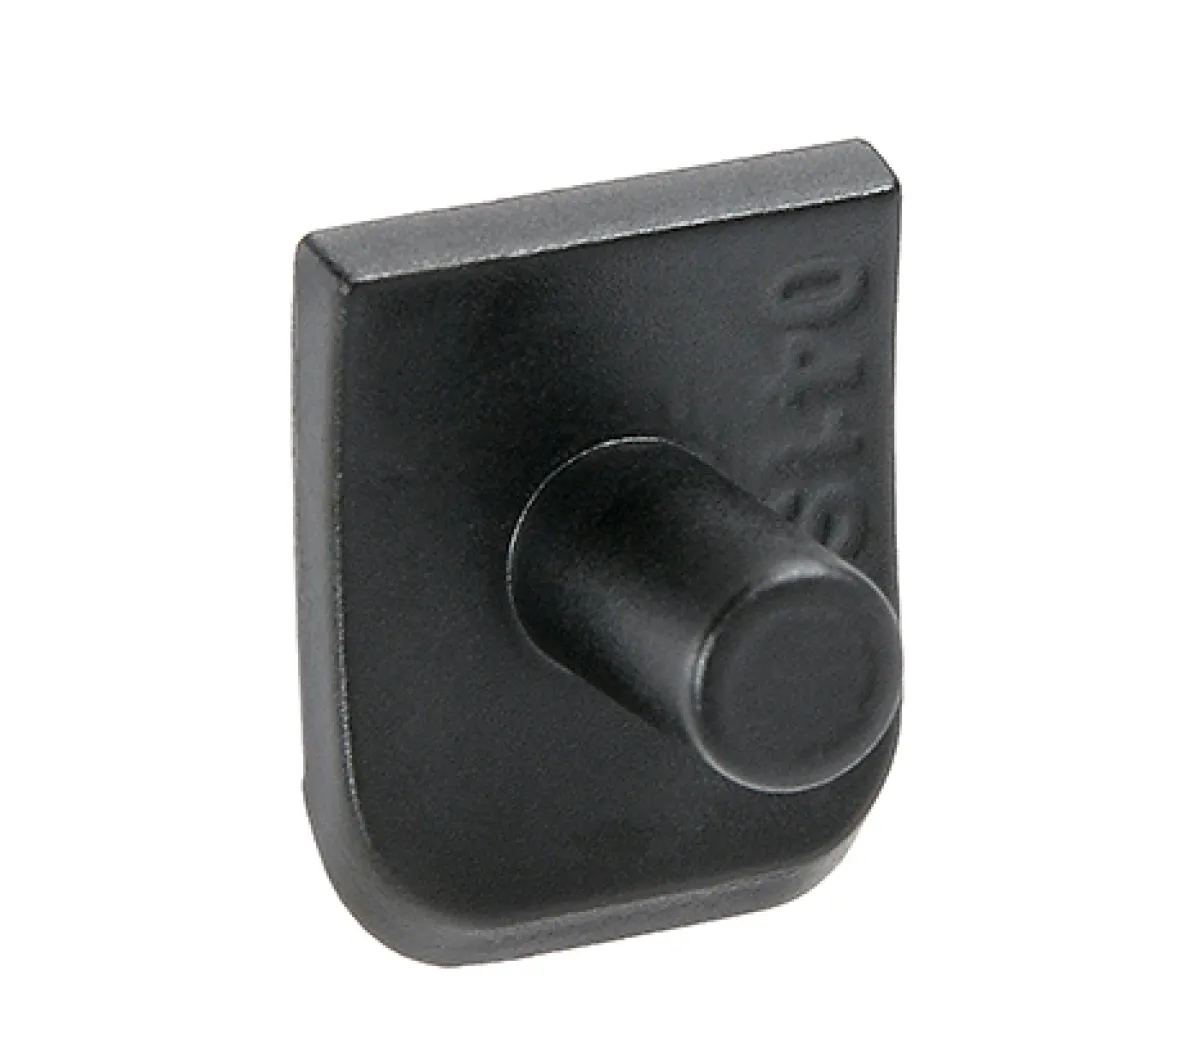 Cyma MP5 SD6 handguard locking pin